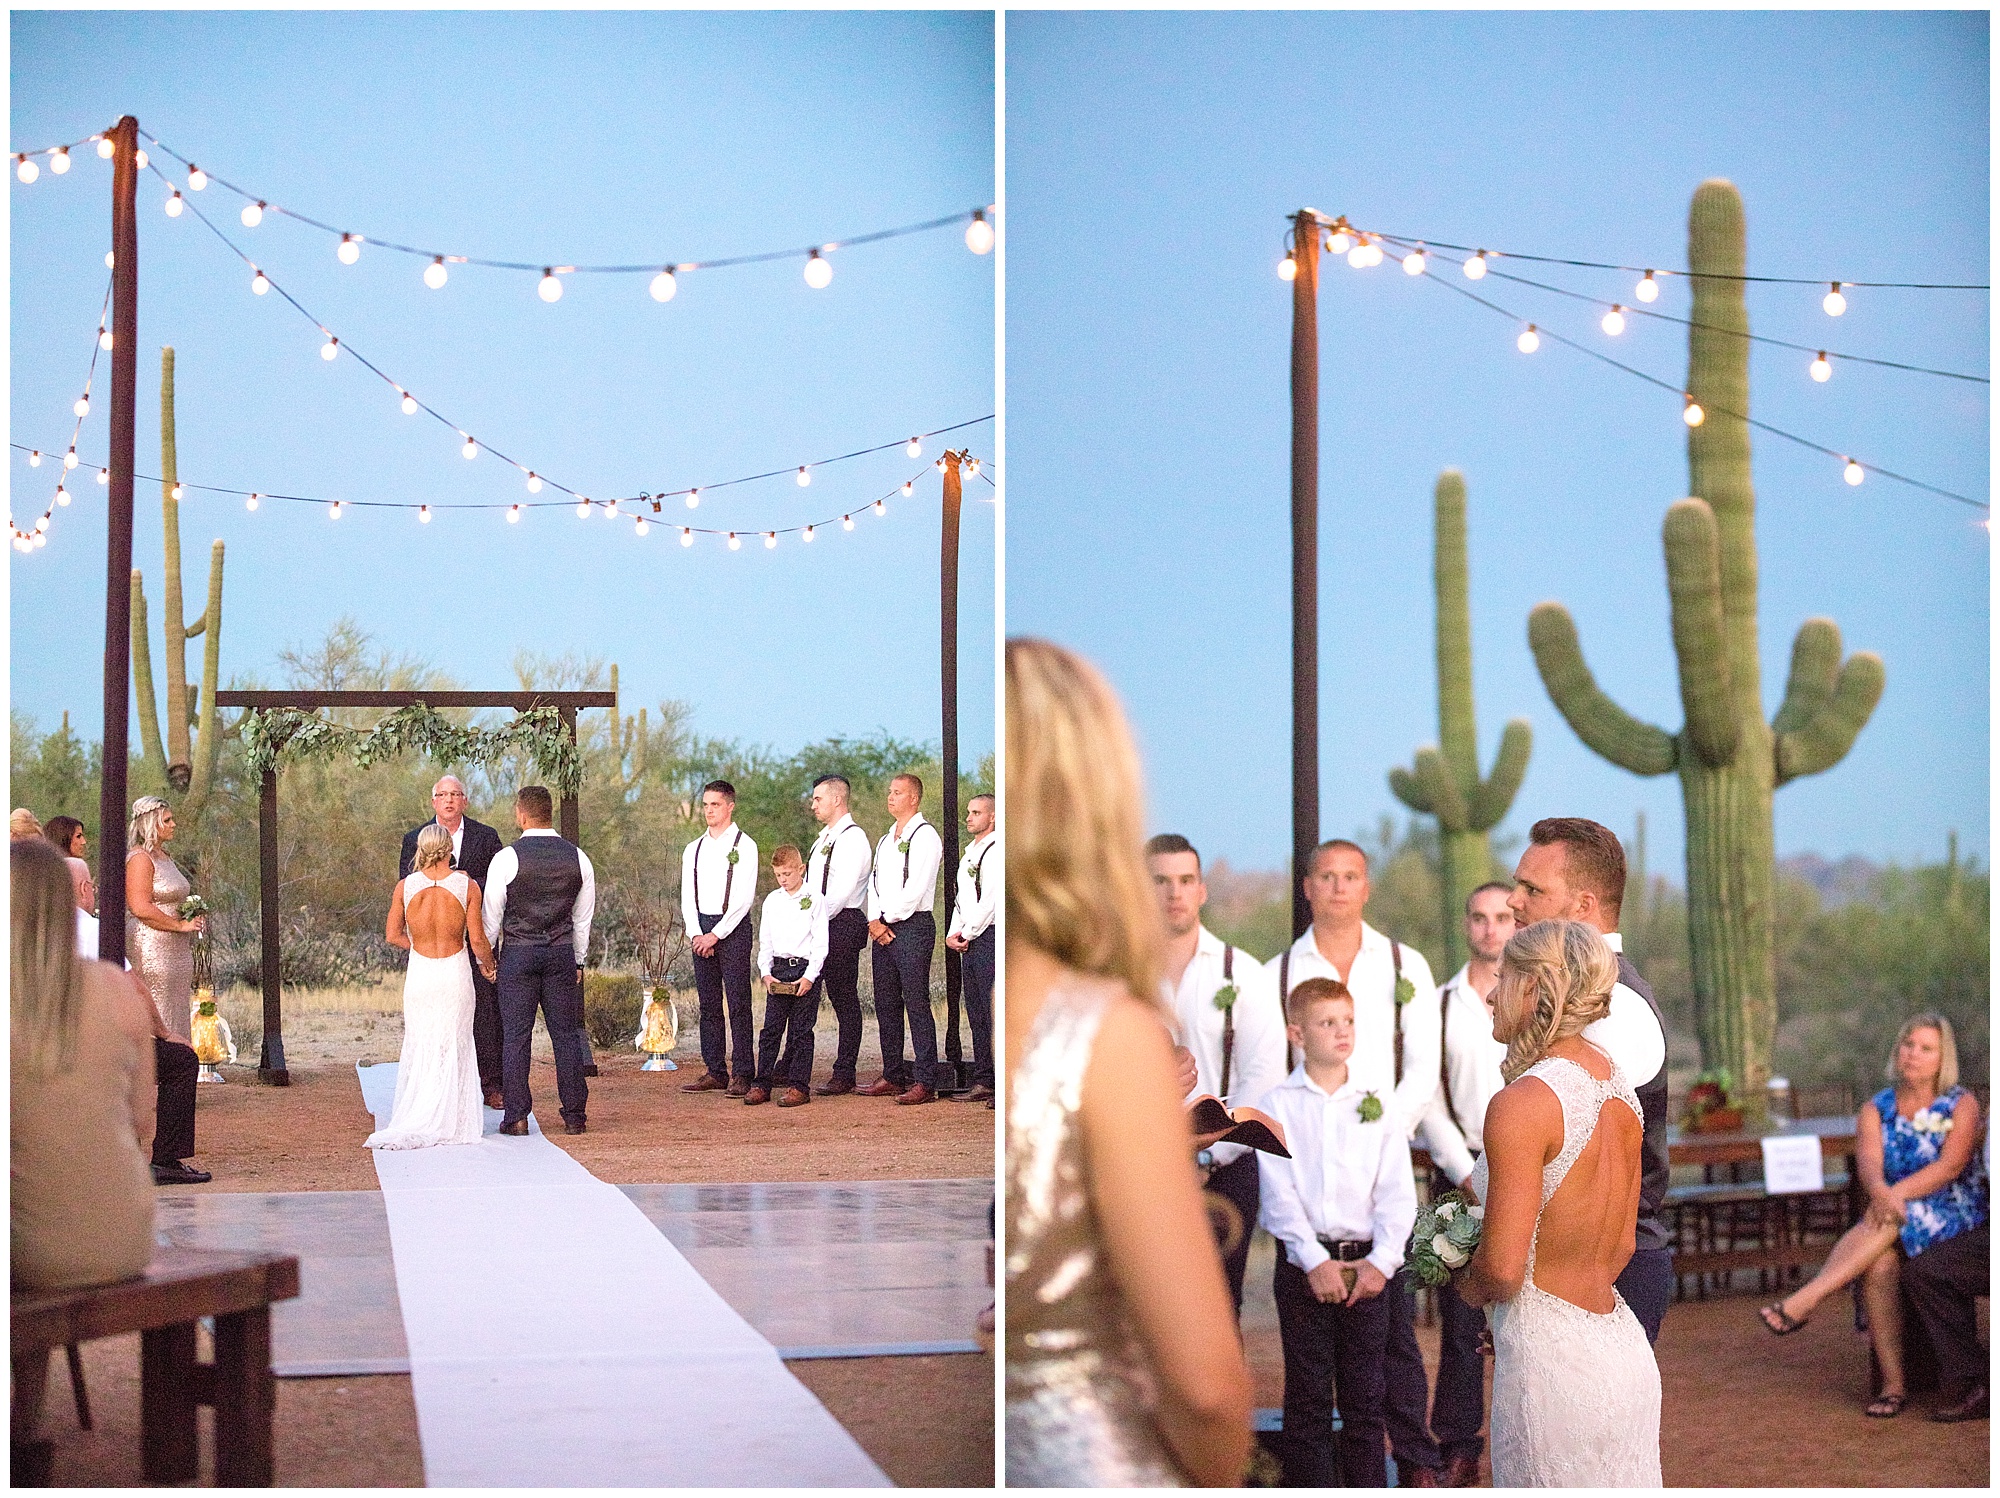 Kelly & Sam's Scottsdale Backyard Wedding